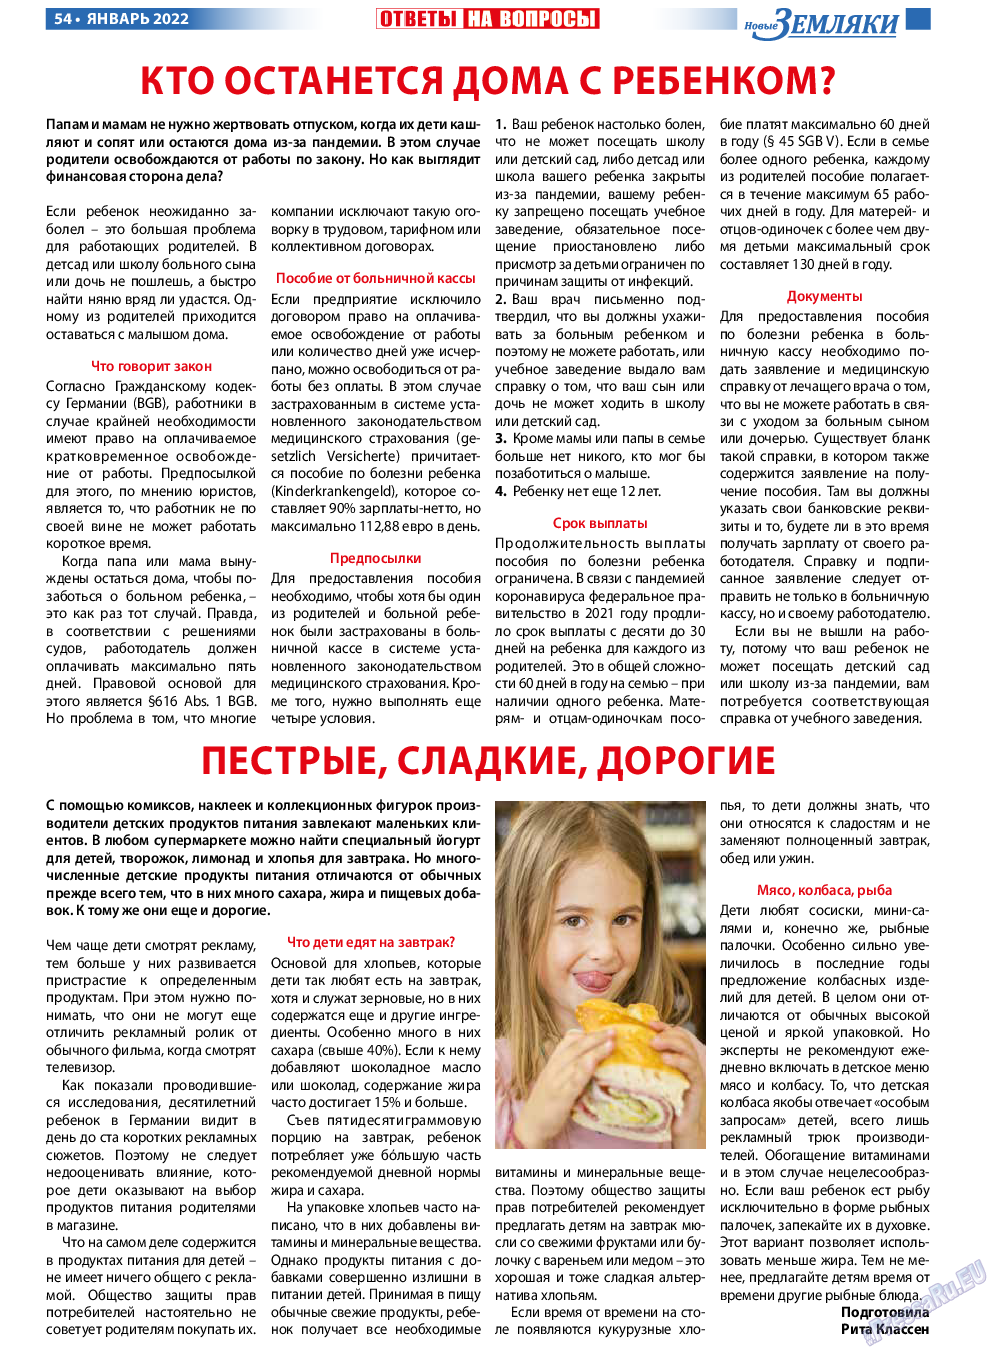 Новые Земляки, газета. 2022 №1 стр.54